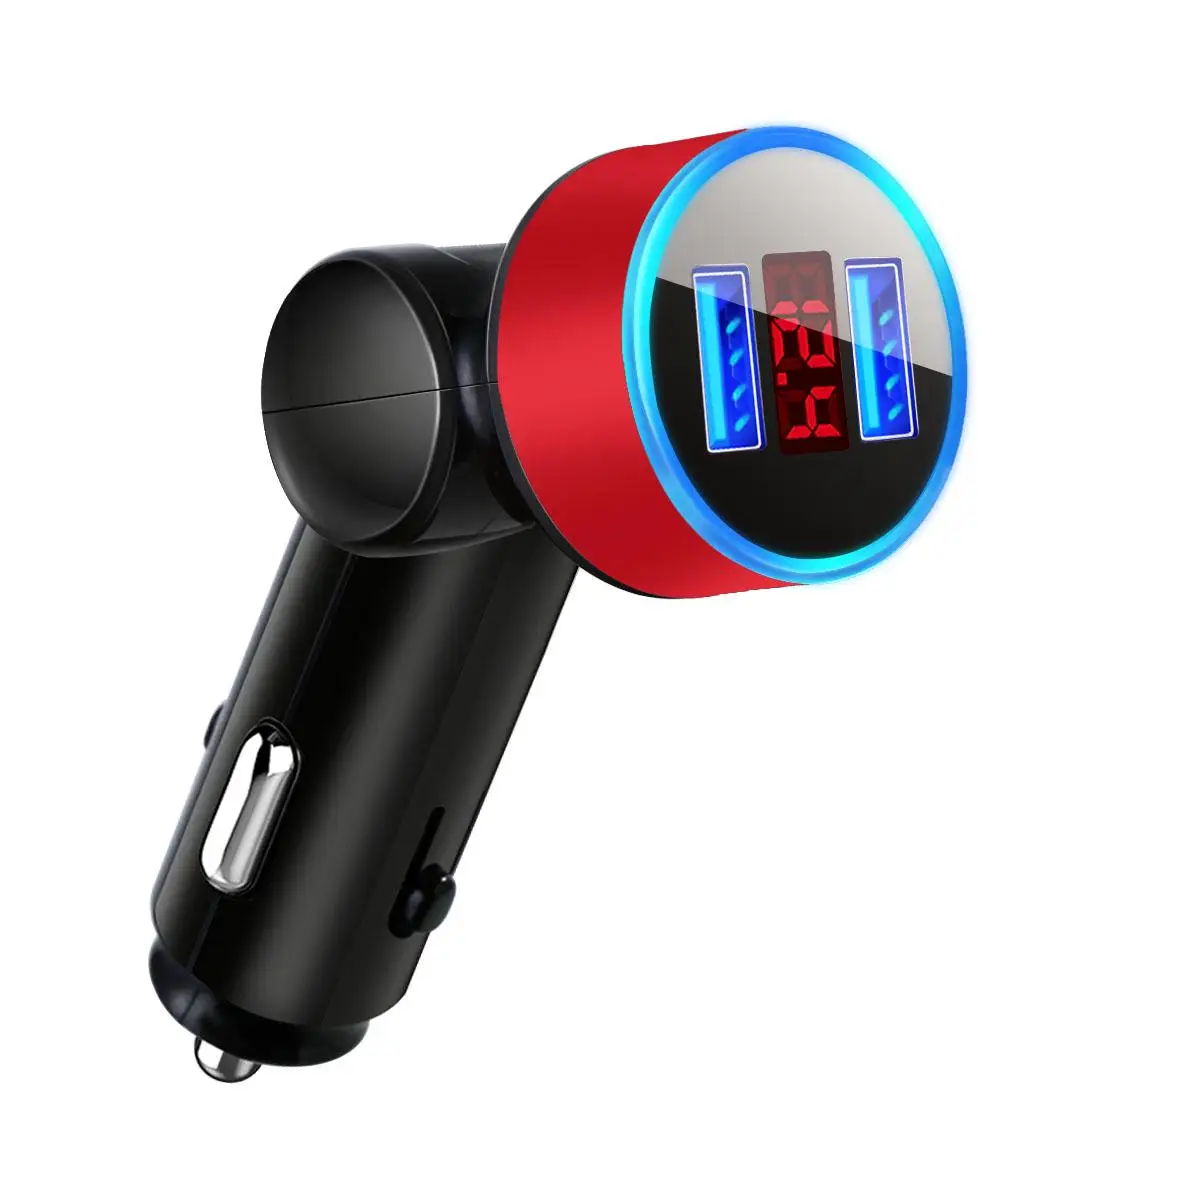 Автомобильные аксессуары интерьерные украшения вращающиеся 5 в 3.1A двойной USB цифровой дисплей зарядное устройство дисплей свет автомобильное зарядное устройство телефон зарядное устройство - Название цвета: Красный